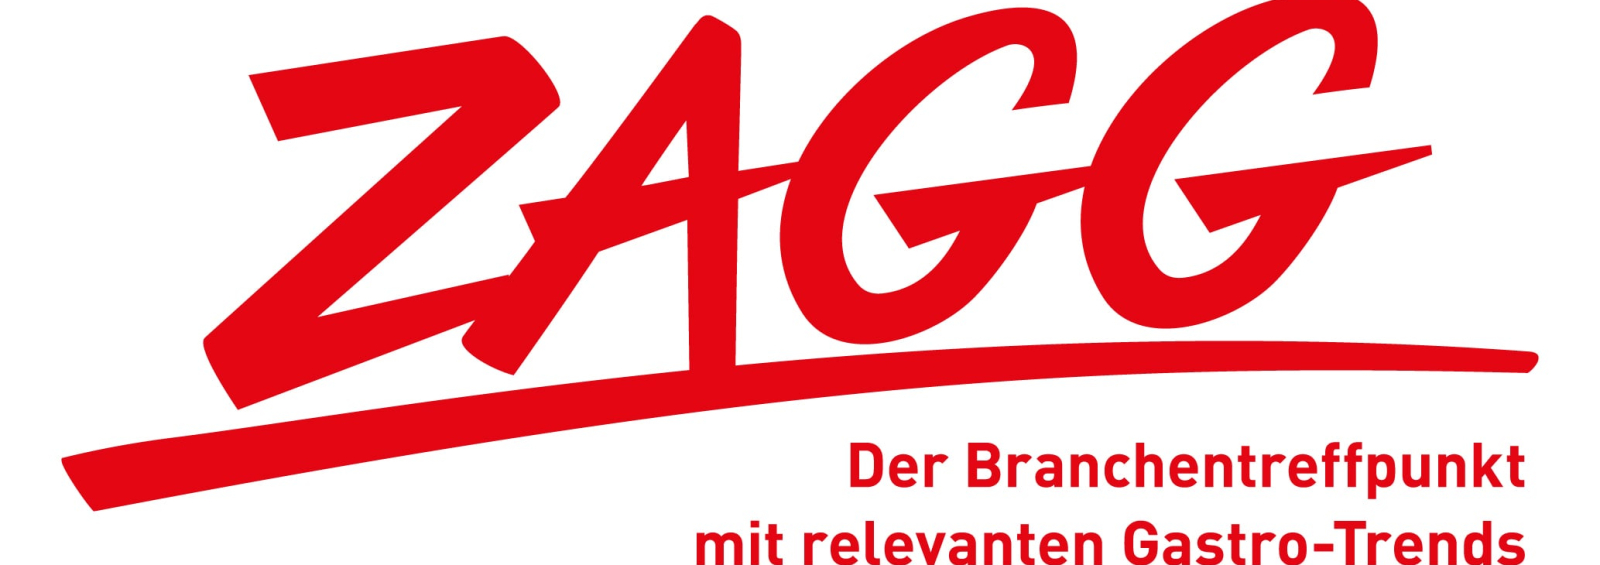 Logo ZAGG 2022